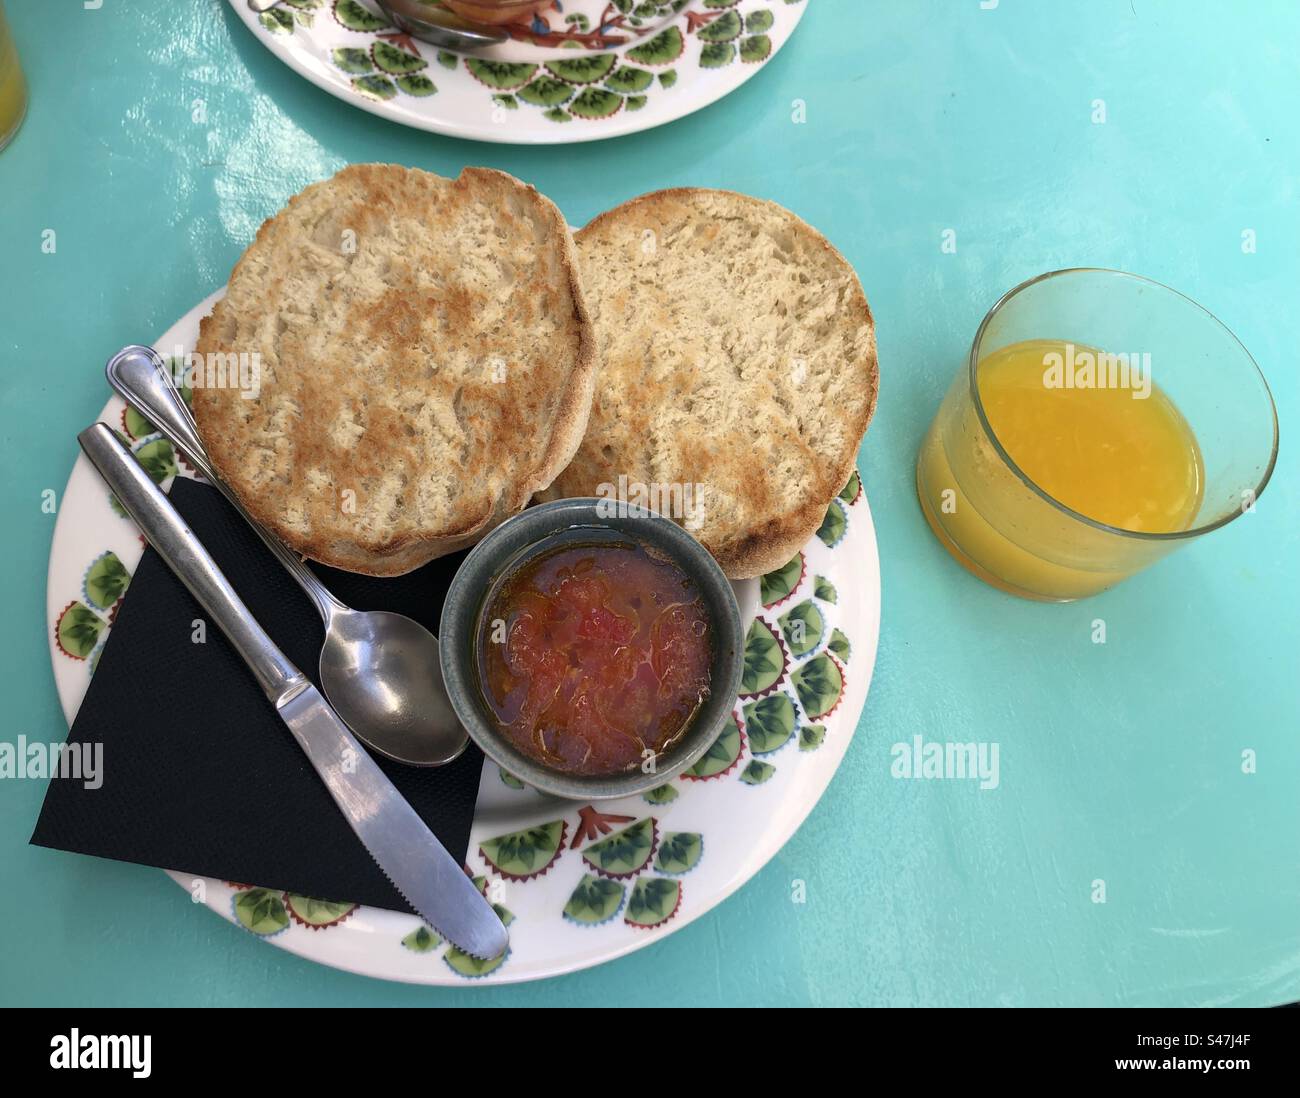 La colazione spagnola comprende pane tostato, pomodori grattugiati e olio d'oliva Foto Stock